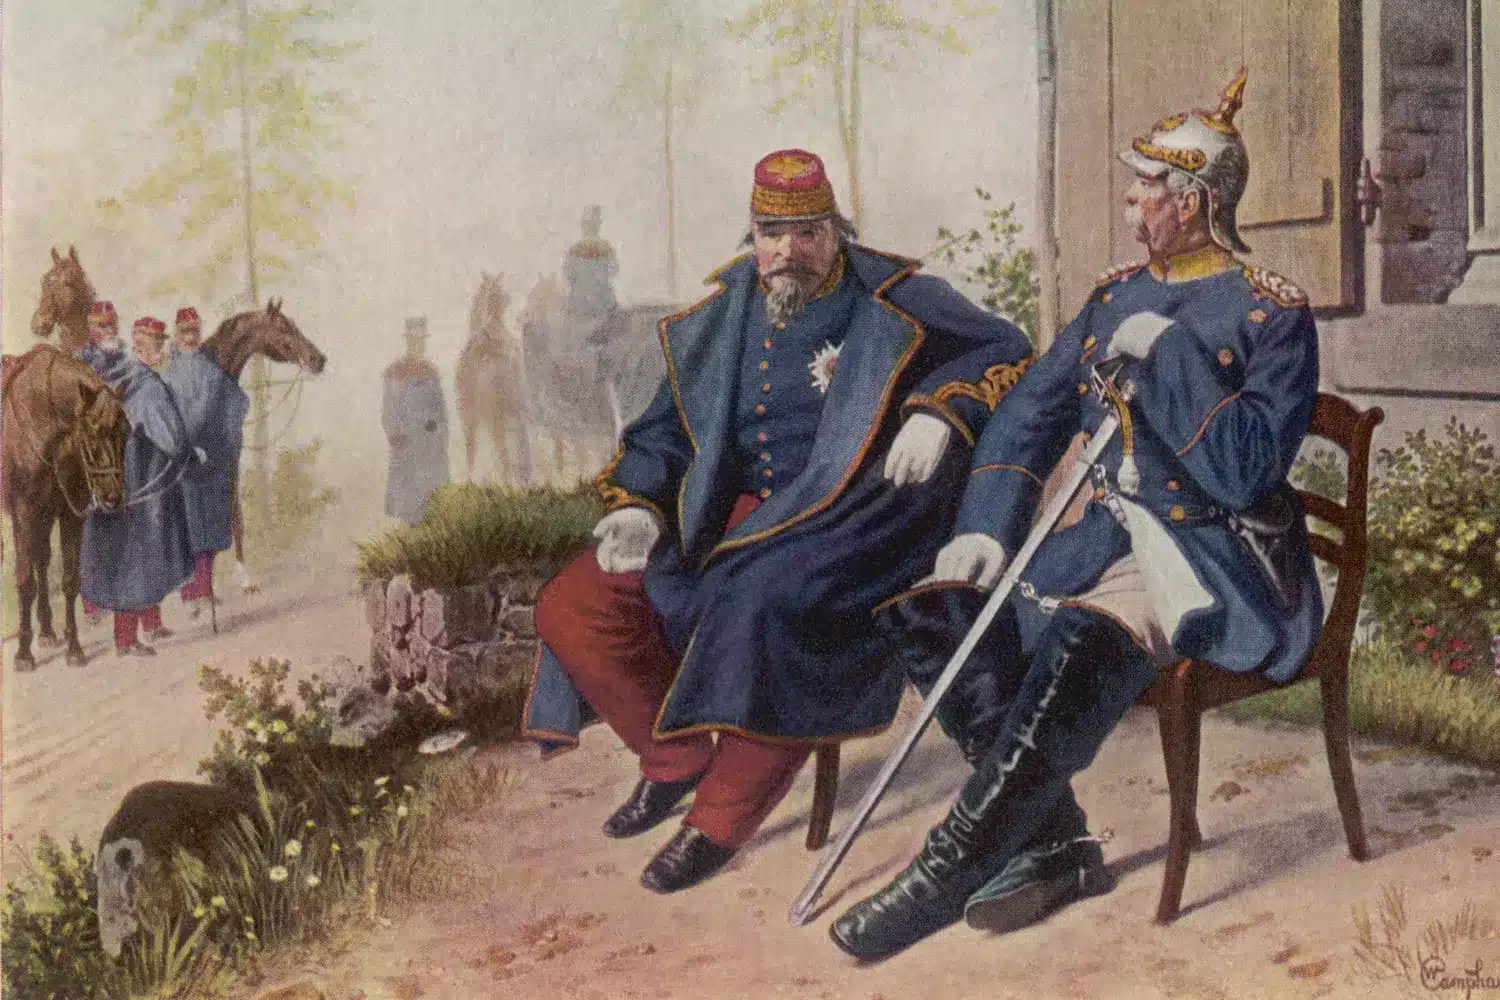 Vestige de la Guerre franco-prussienne La Strasbourgeoise est un chant militaire de revanche. Napoléon III et Bismarck, le 2 septembre 1870 à Donchery, entrevue après la bataille de Sedan, Wilhelm Camphausen | Domaine public